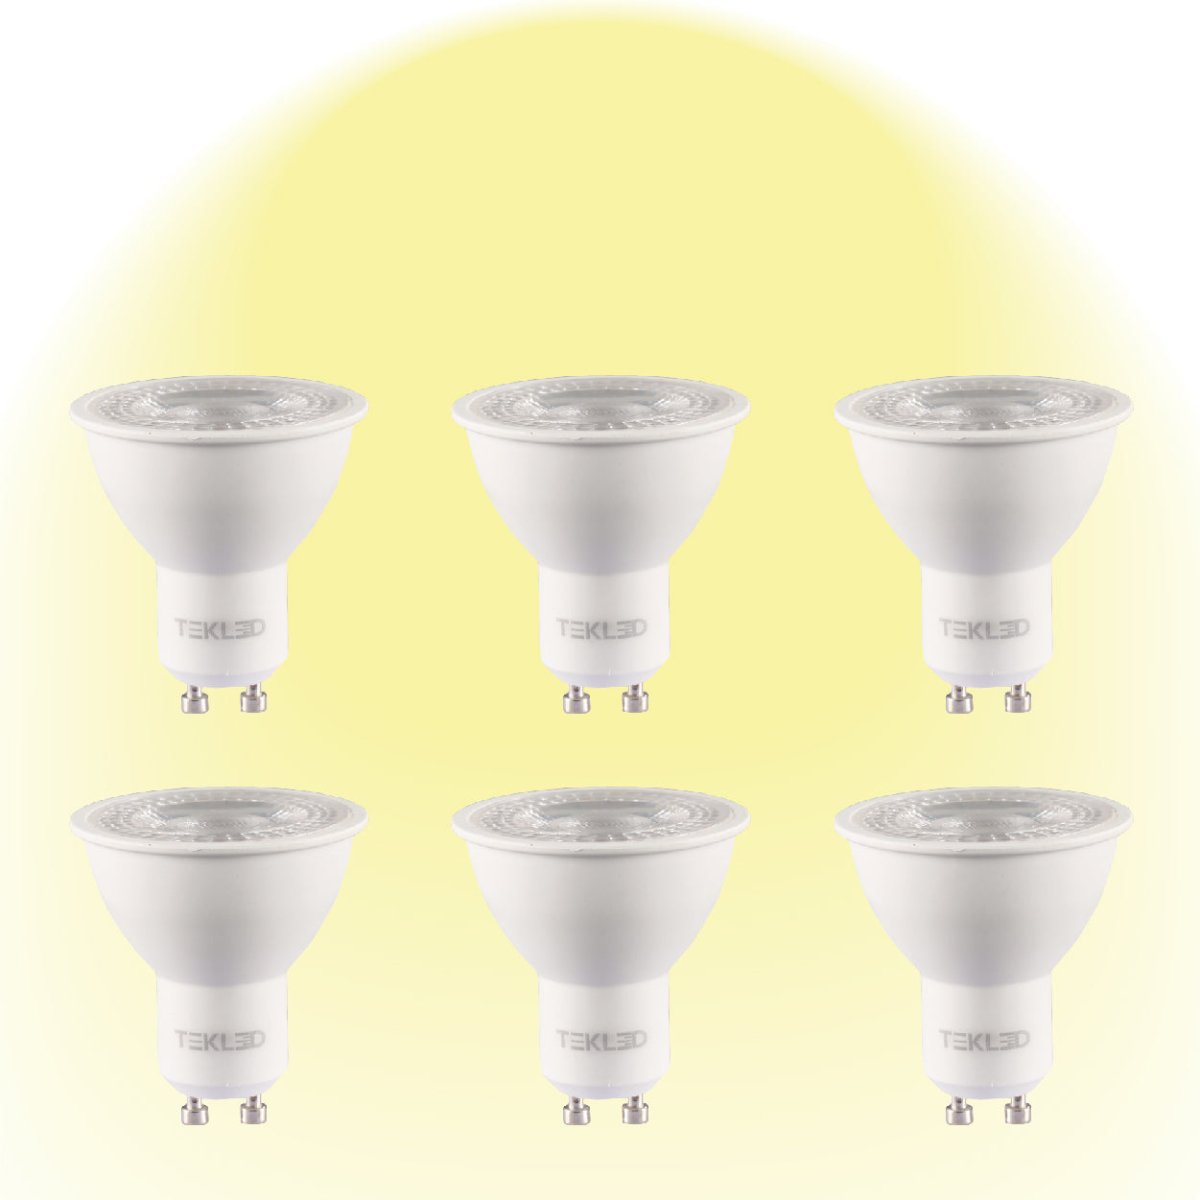 Dimmable GU10 LED spot light bulb  cct 3000K warm white pack of 6